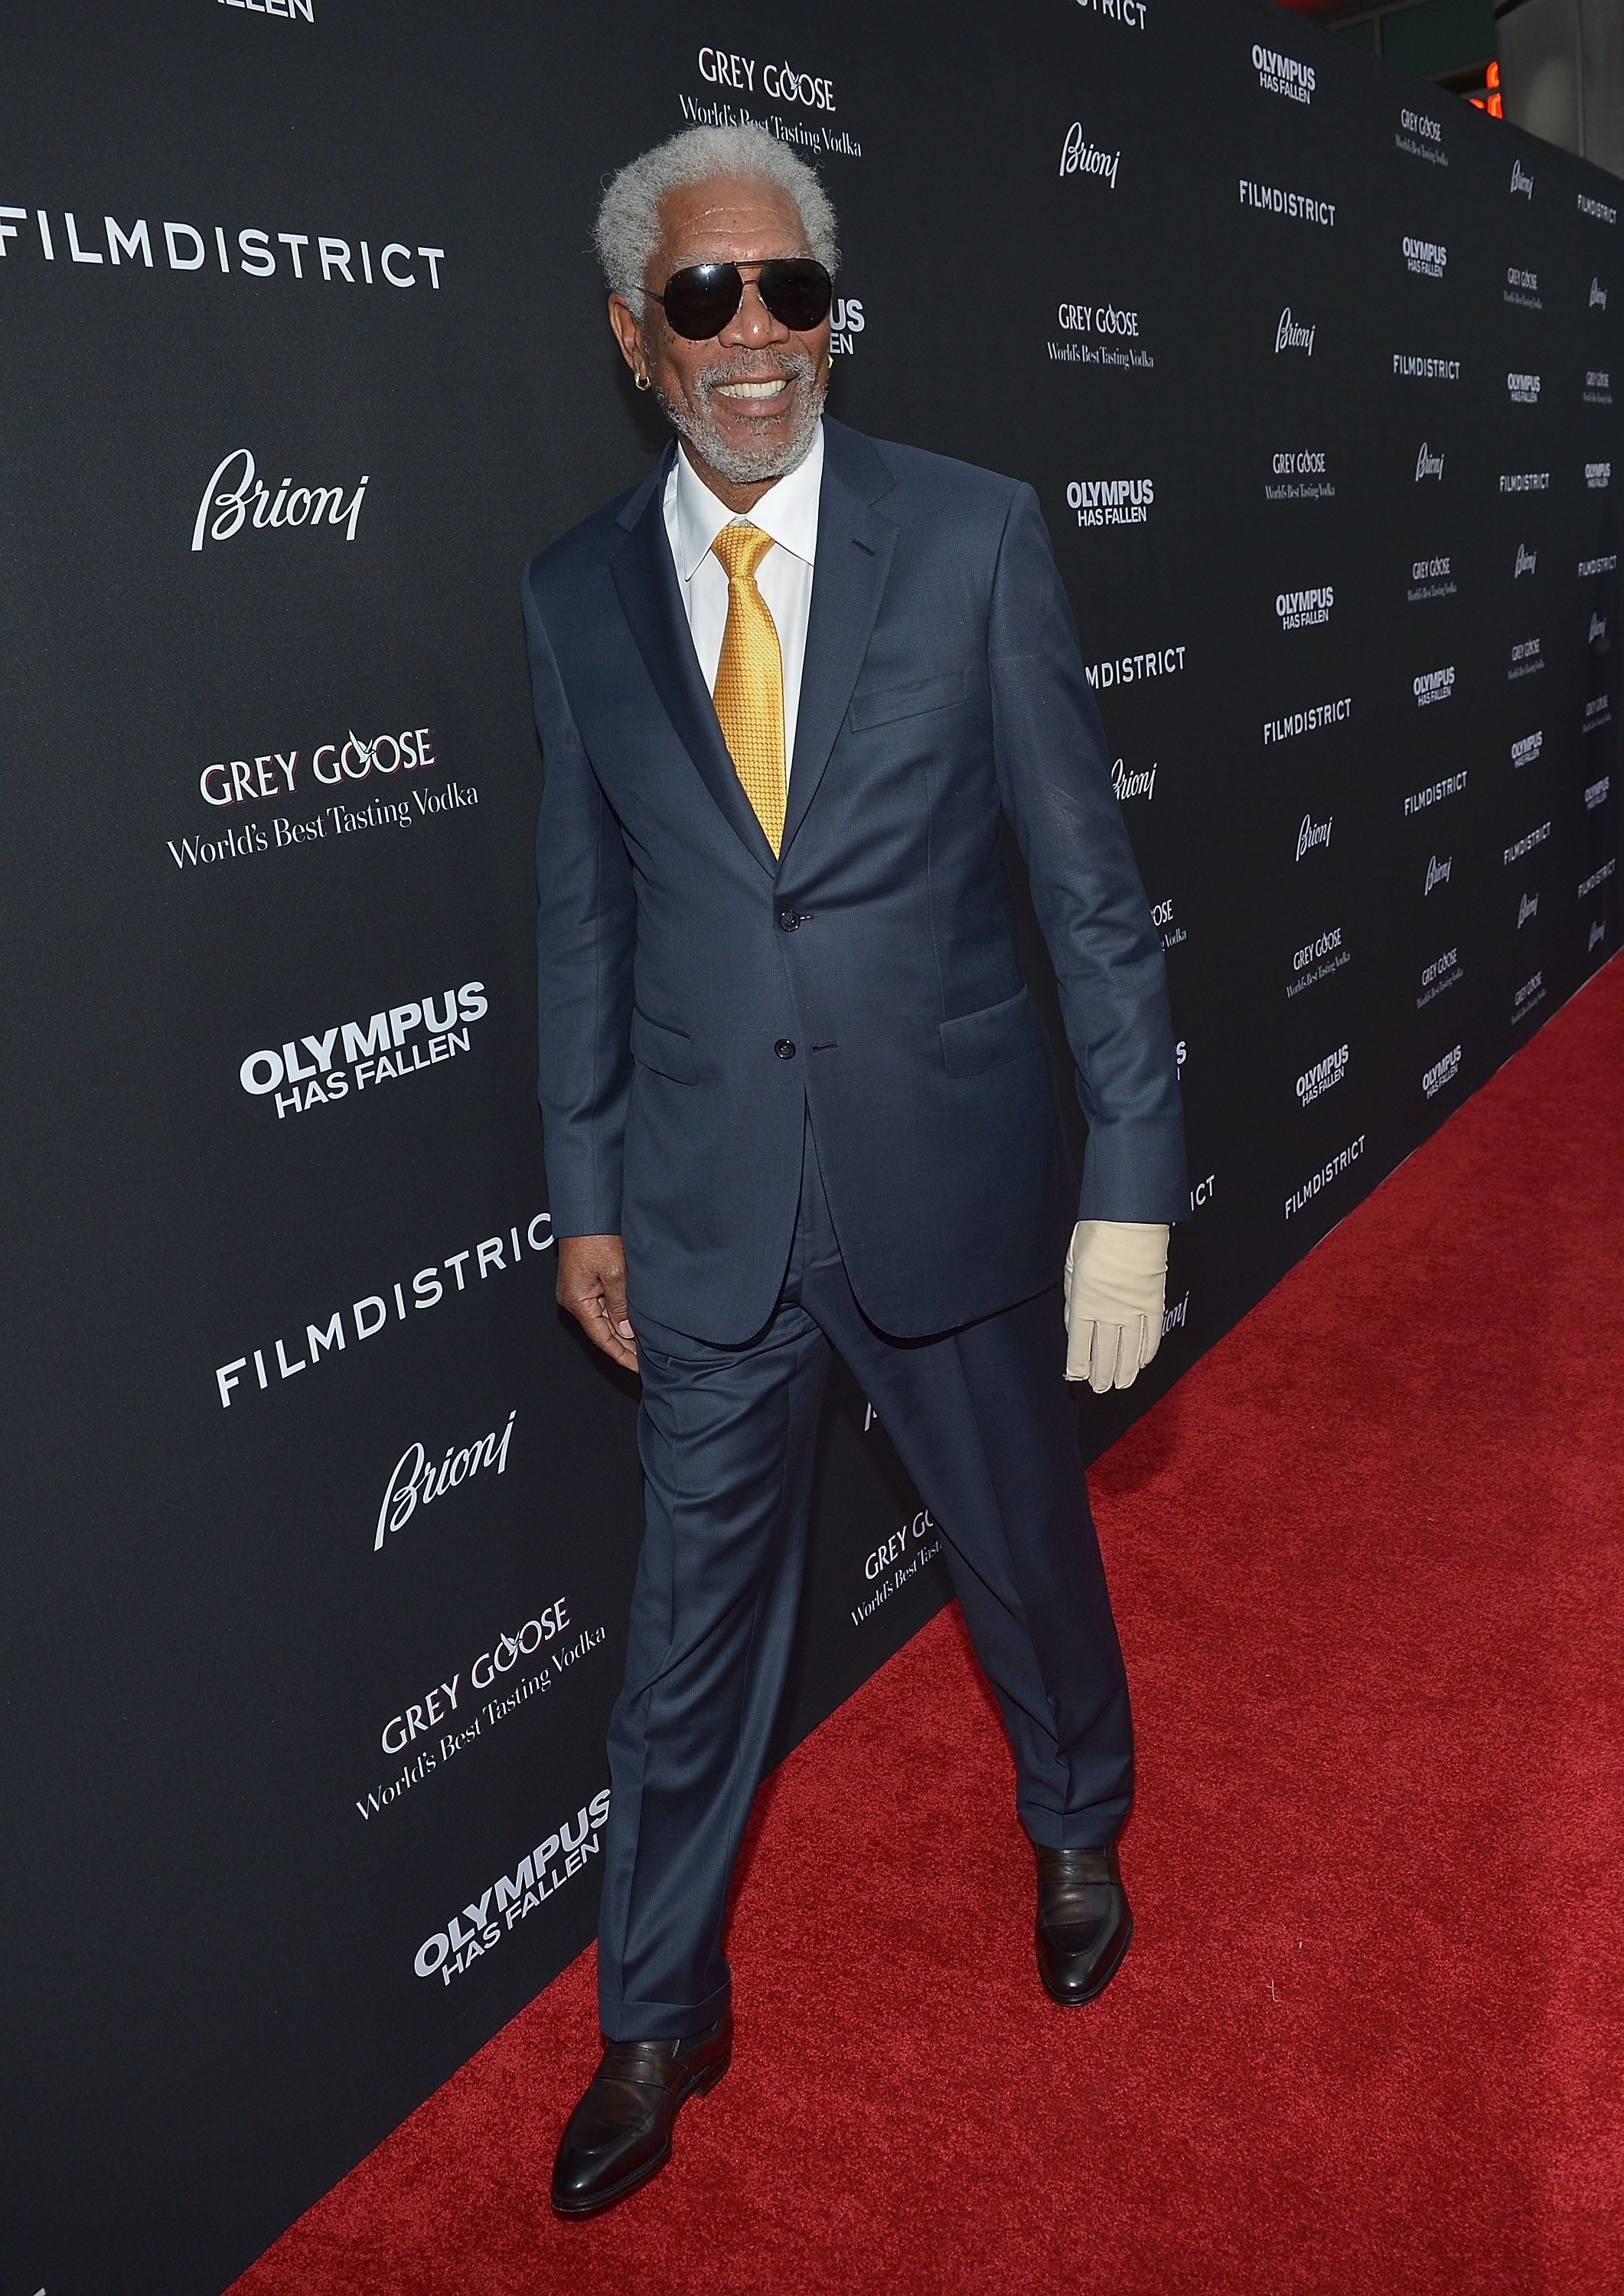 Morgan Freeman en el estreno mundial de "Olympus Has Fallen" en el Brioni Sponsors Film District, en 2013. | Foto: Getty Images